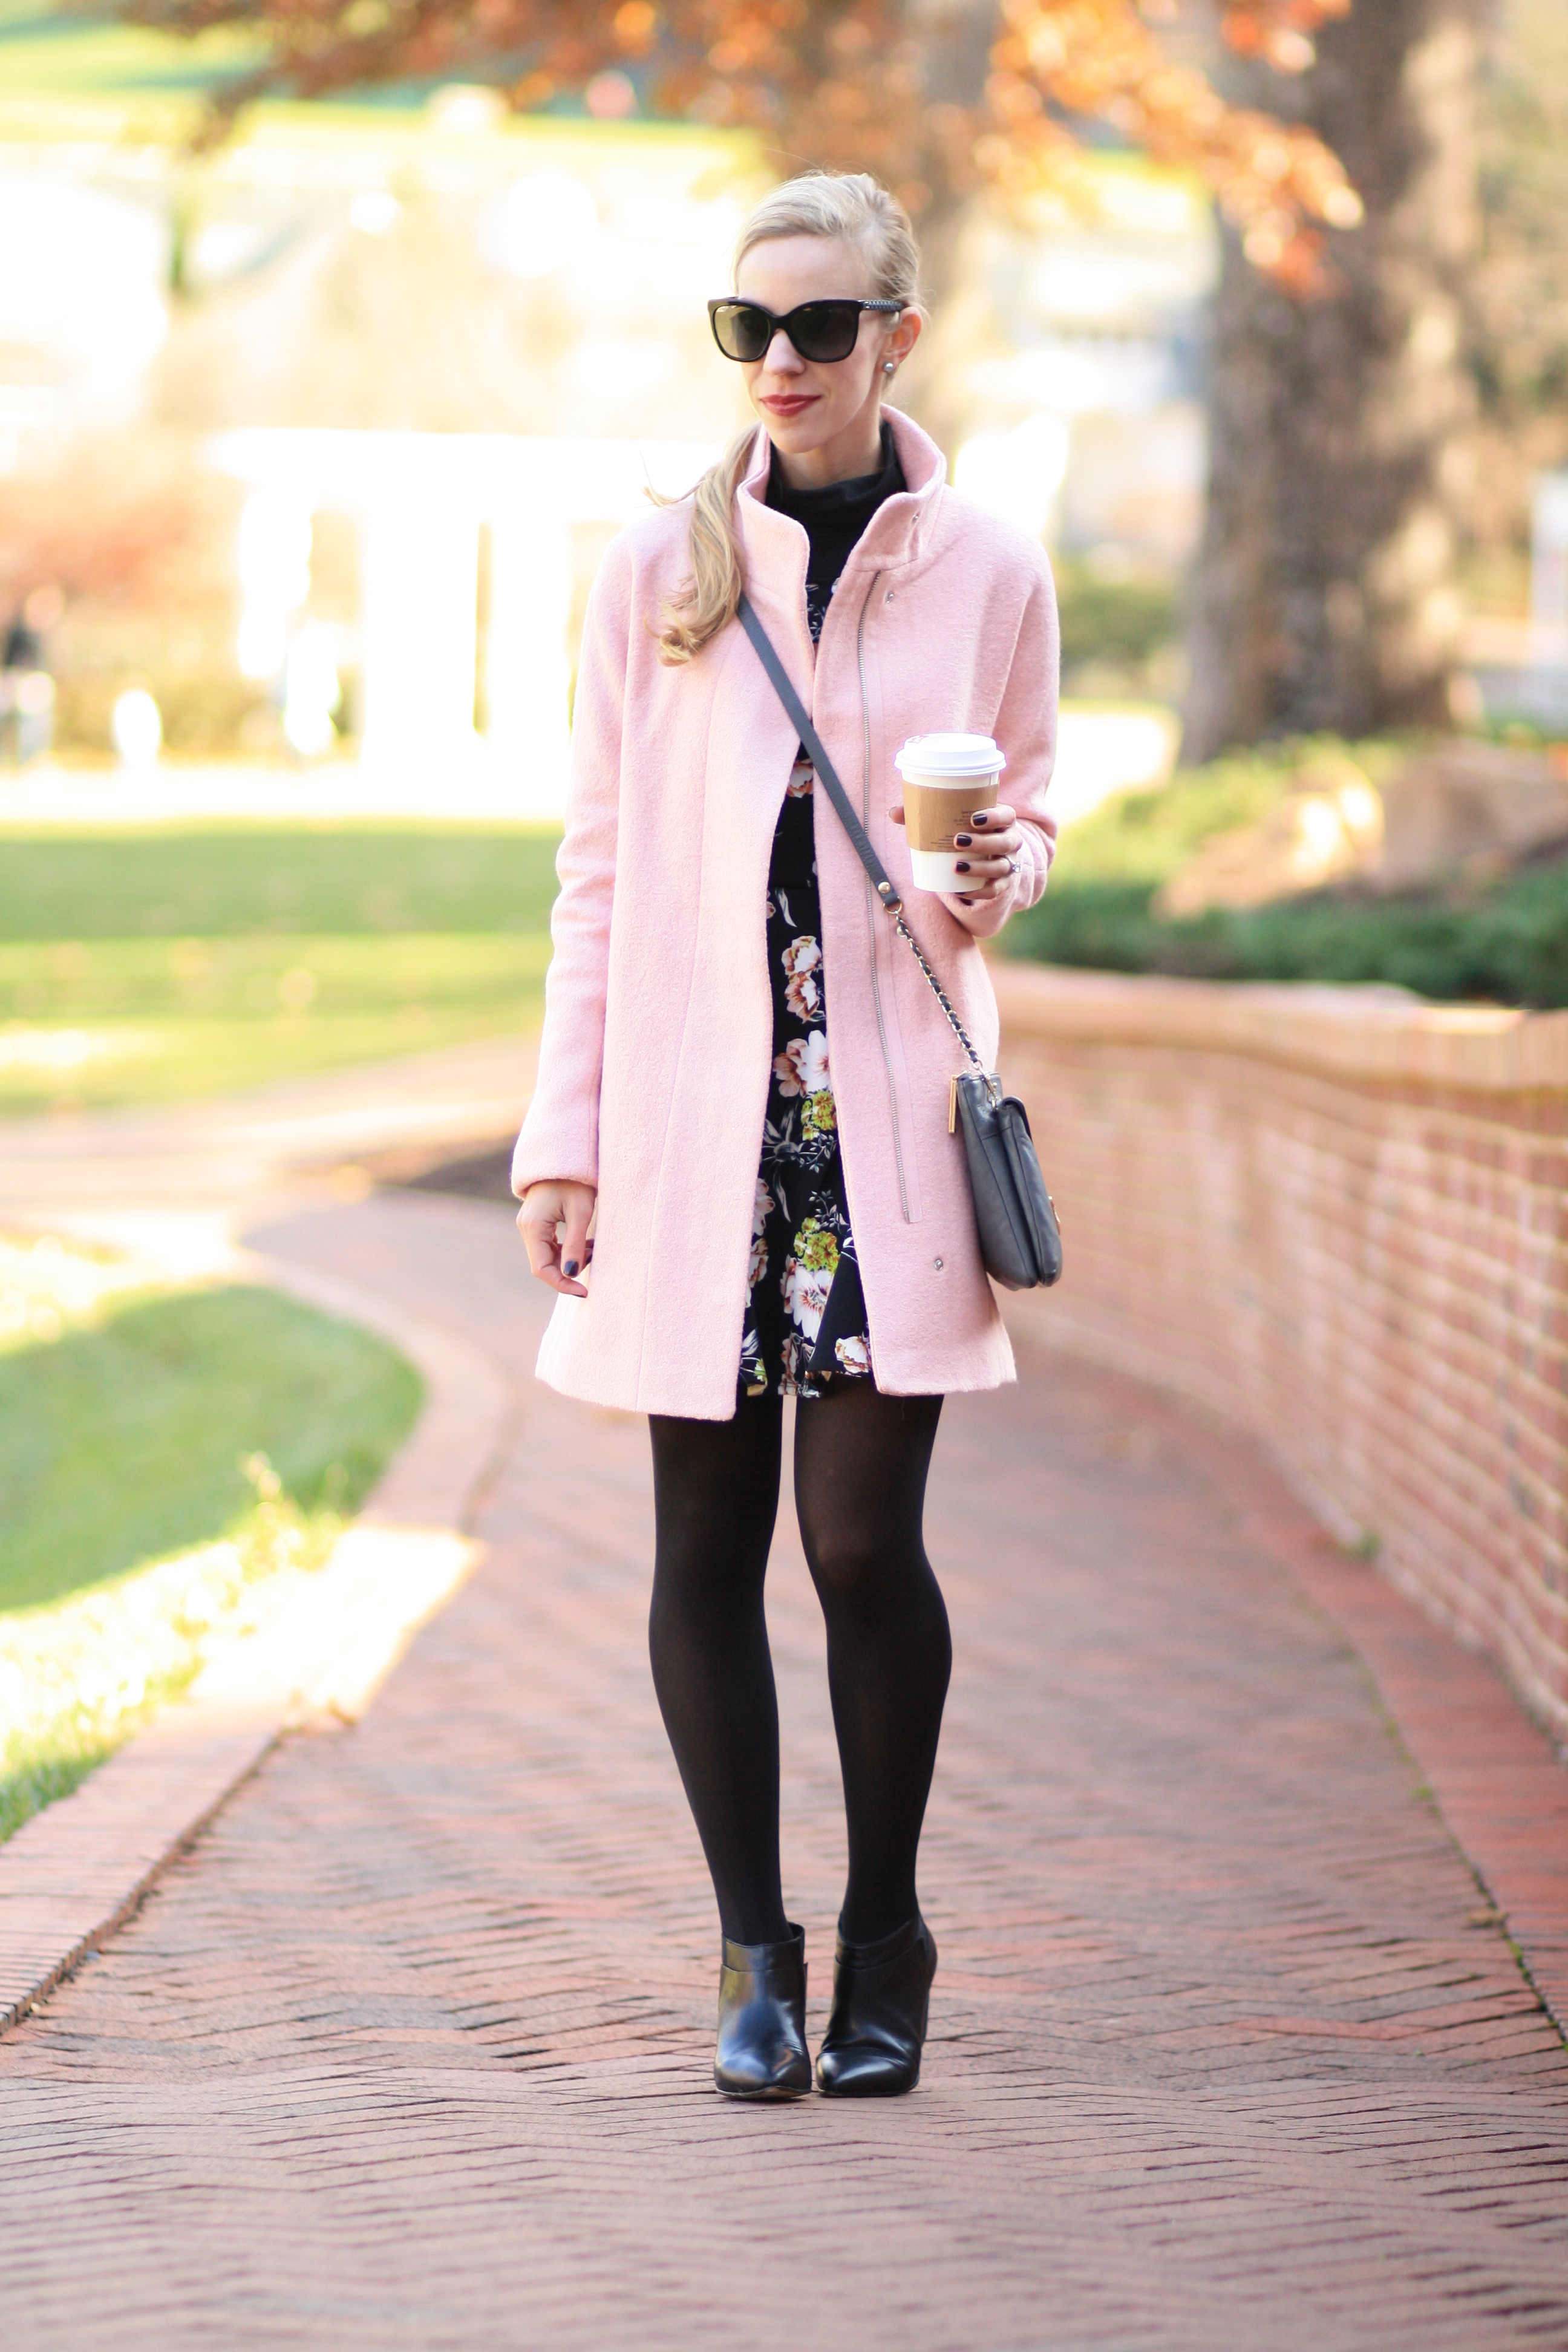 Pink dress, black tights, animal-print jacket, black ankle boots, pink bag